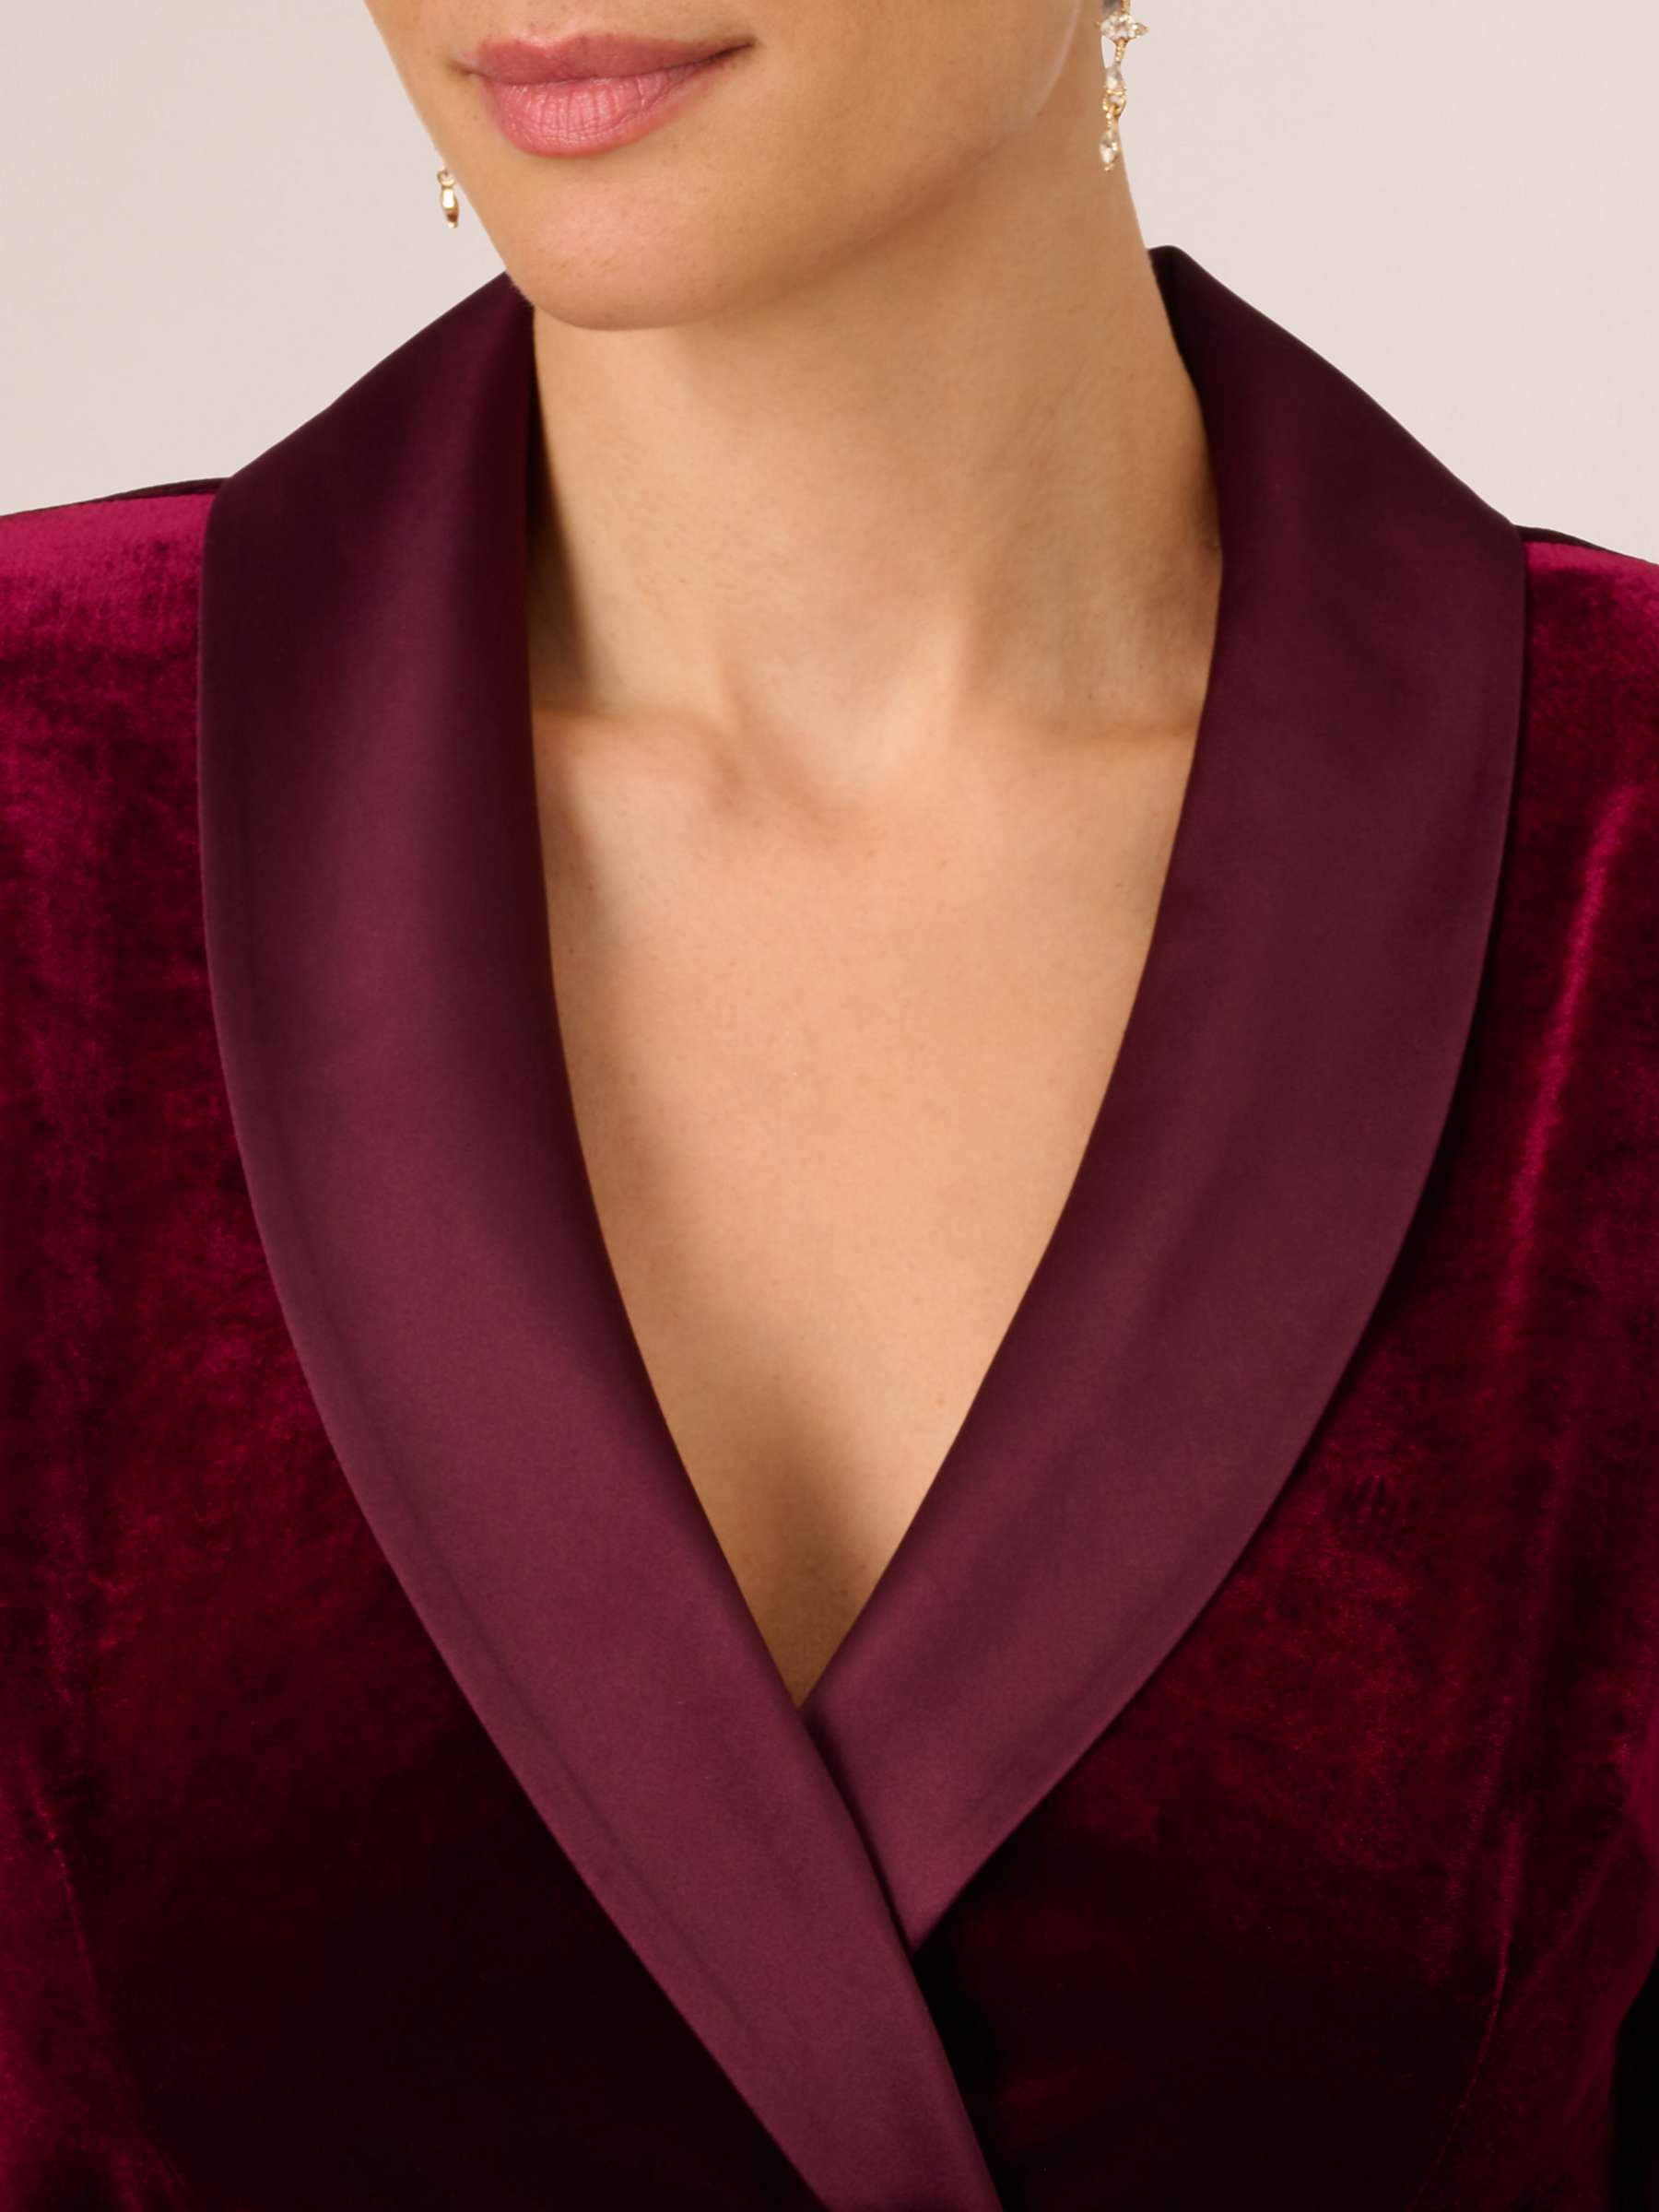 Buy Adrianna Papell Velvet Tuxedo Wrap Jacket, Burgundy Online at johnlewis.com